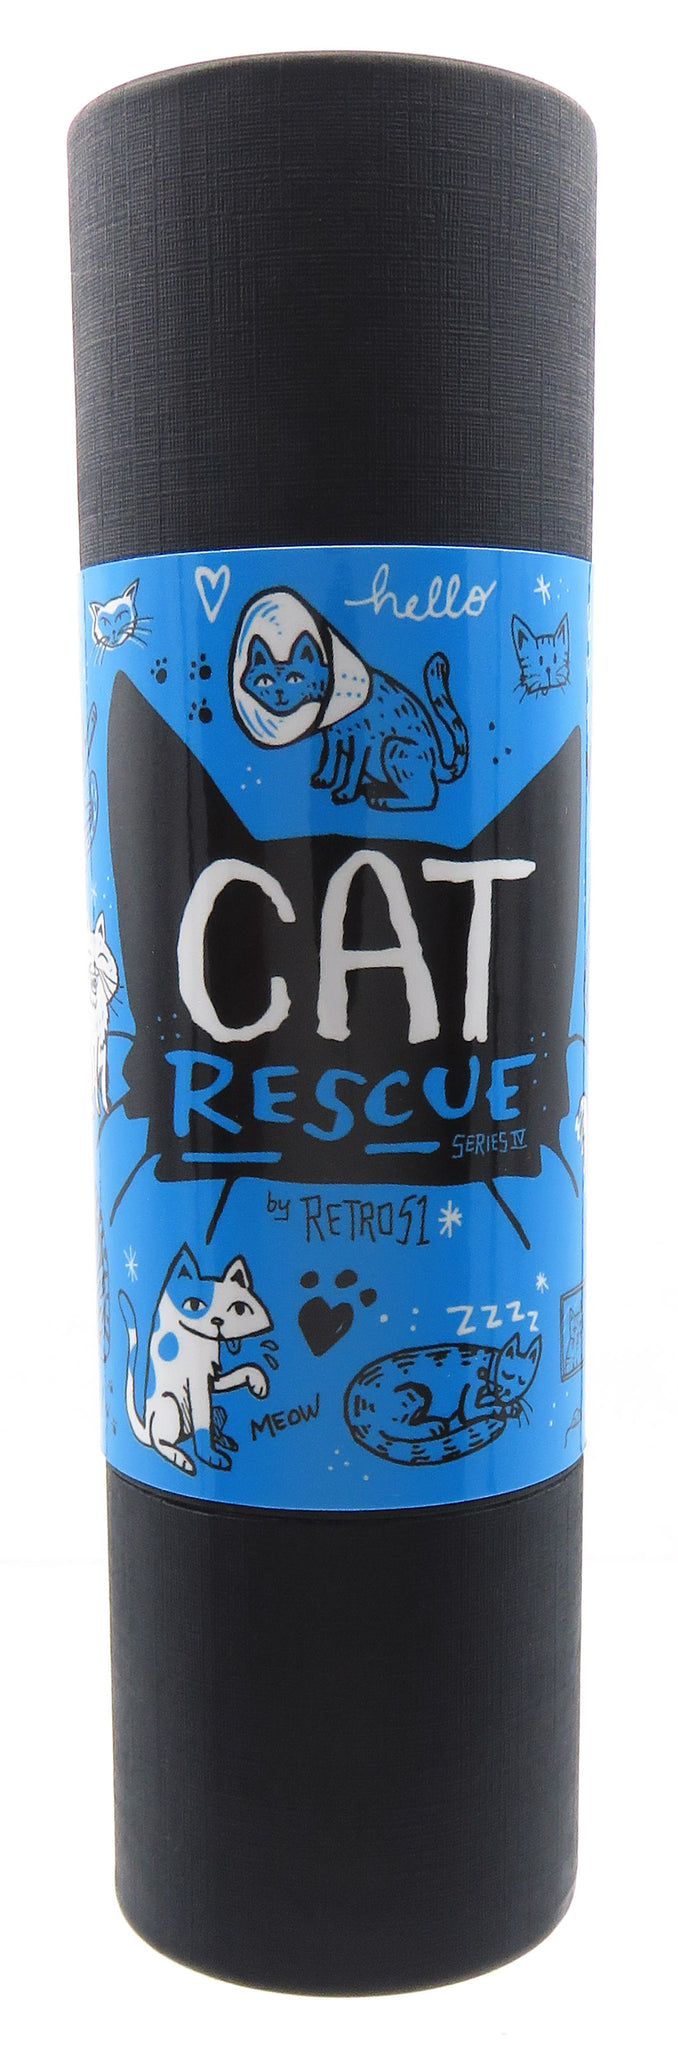 Retro '51 Cat Rescue, Series IV